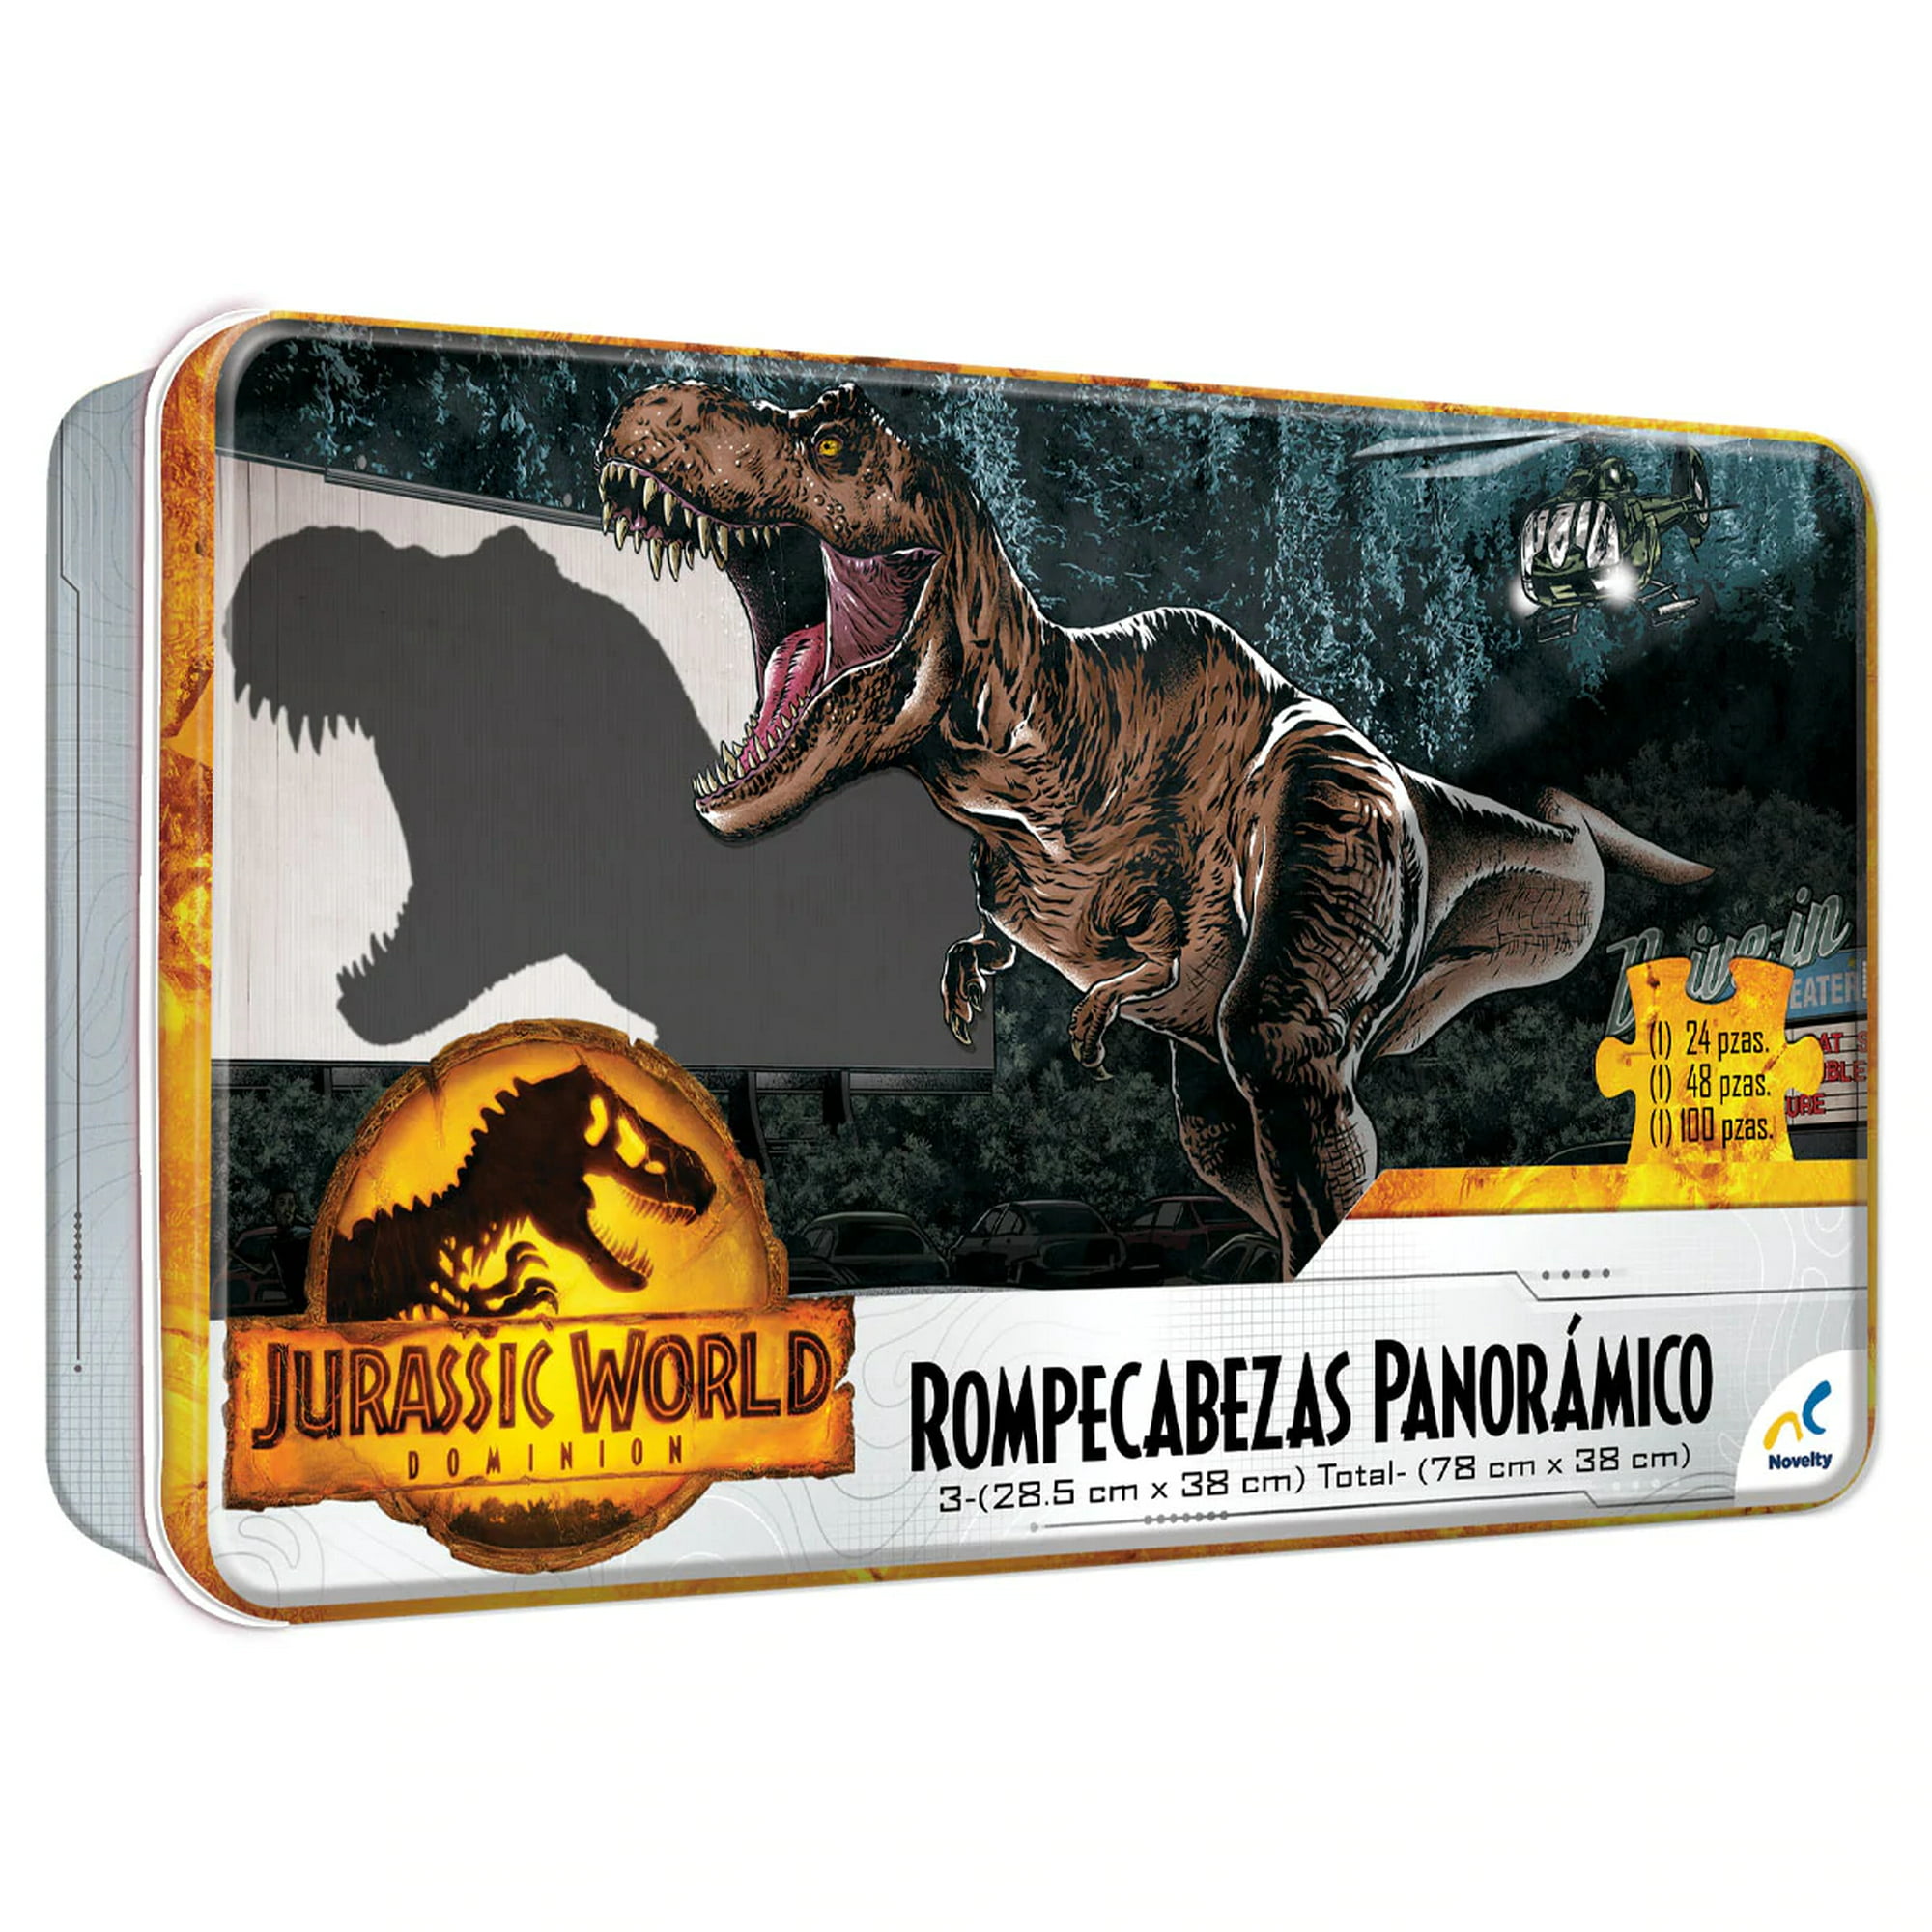 Juego De Mesa Novelty Jurassic World Dominion Rompecabezas Tin Panorámico 3 en 1 Walmart línea